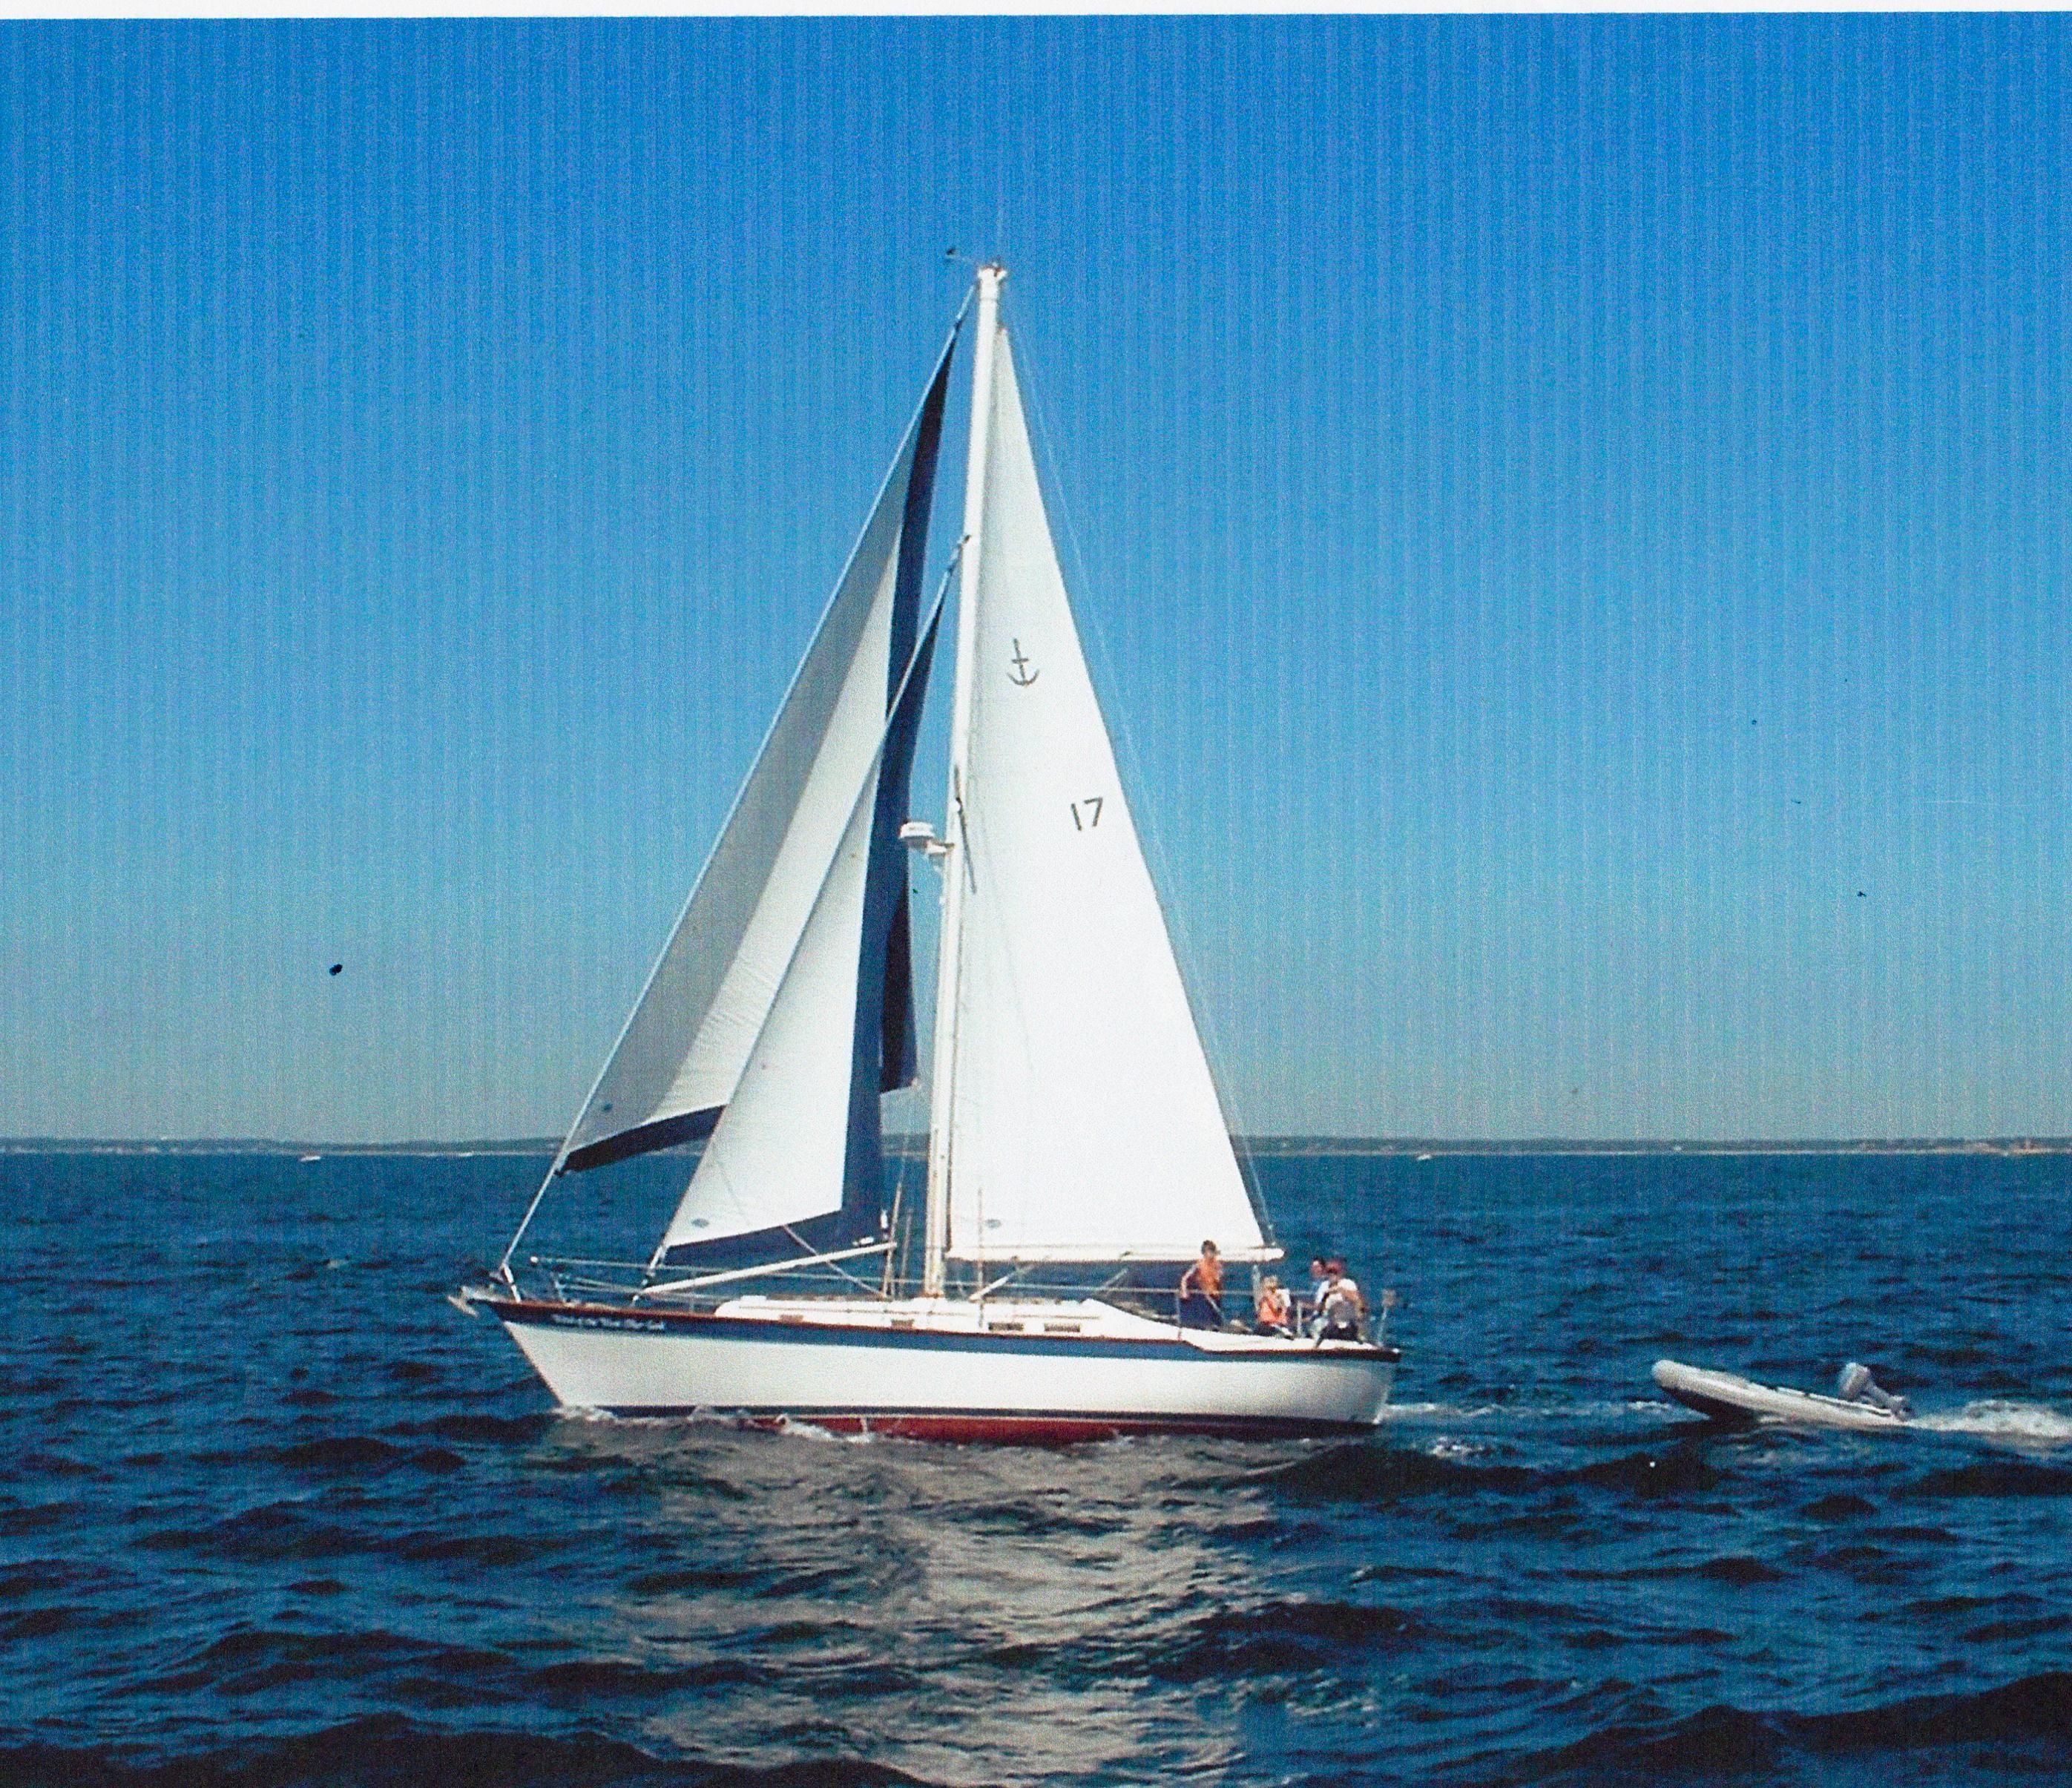 35ft sailboat